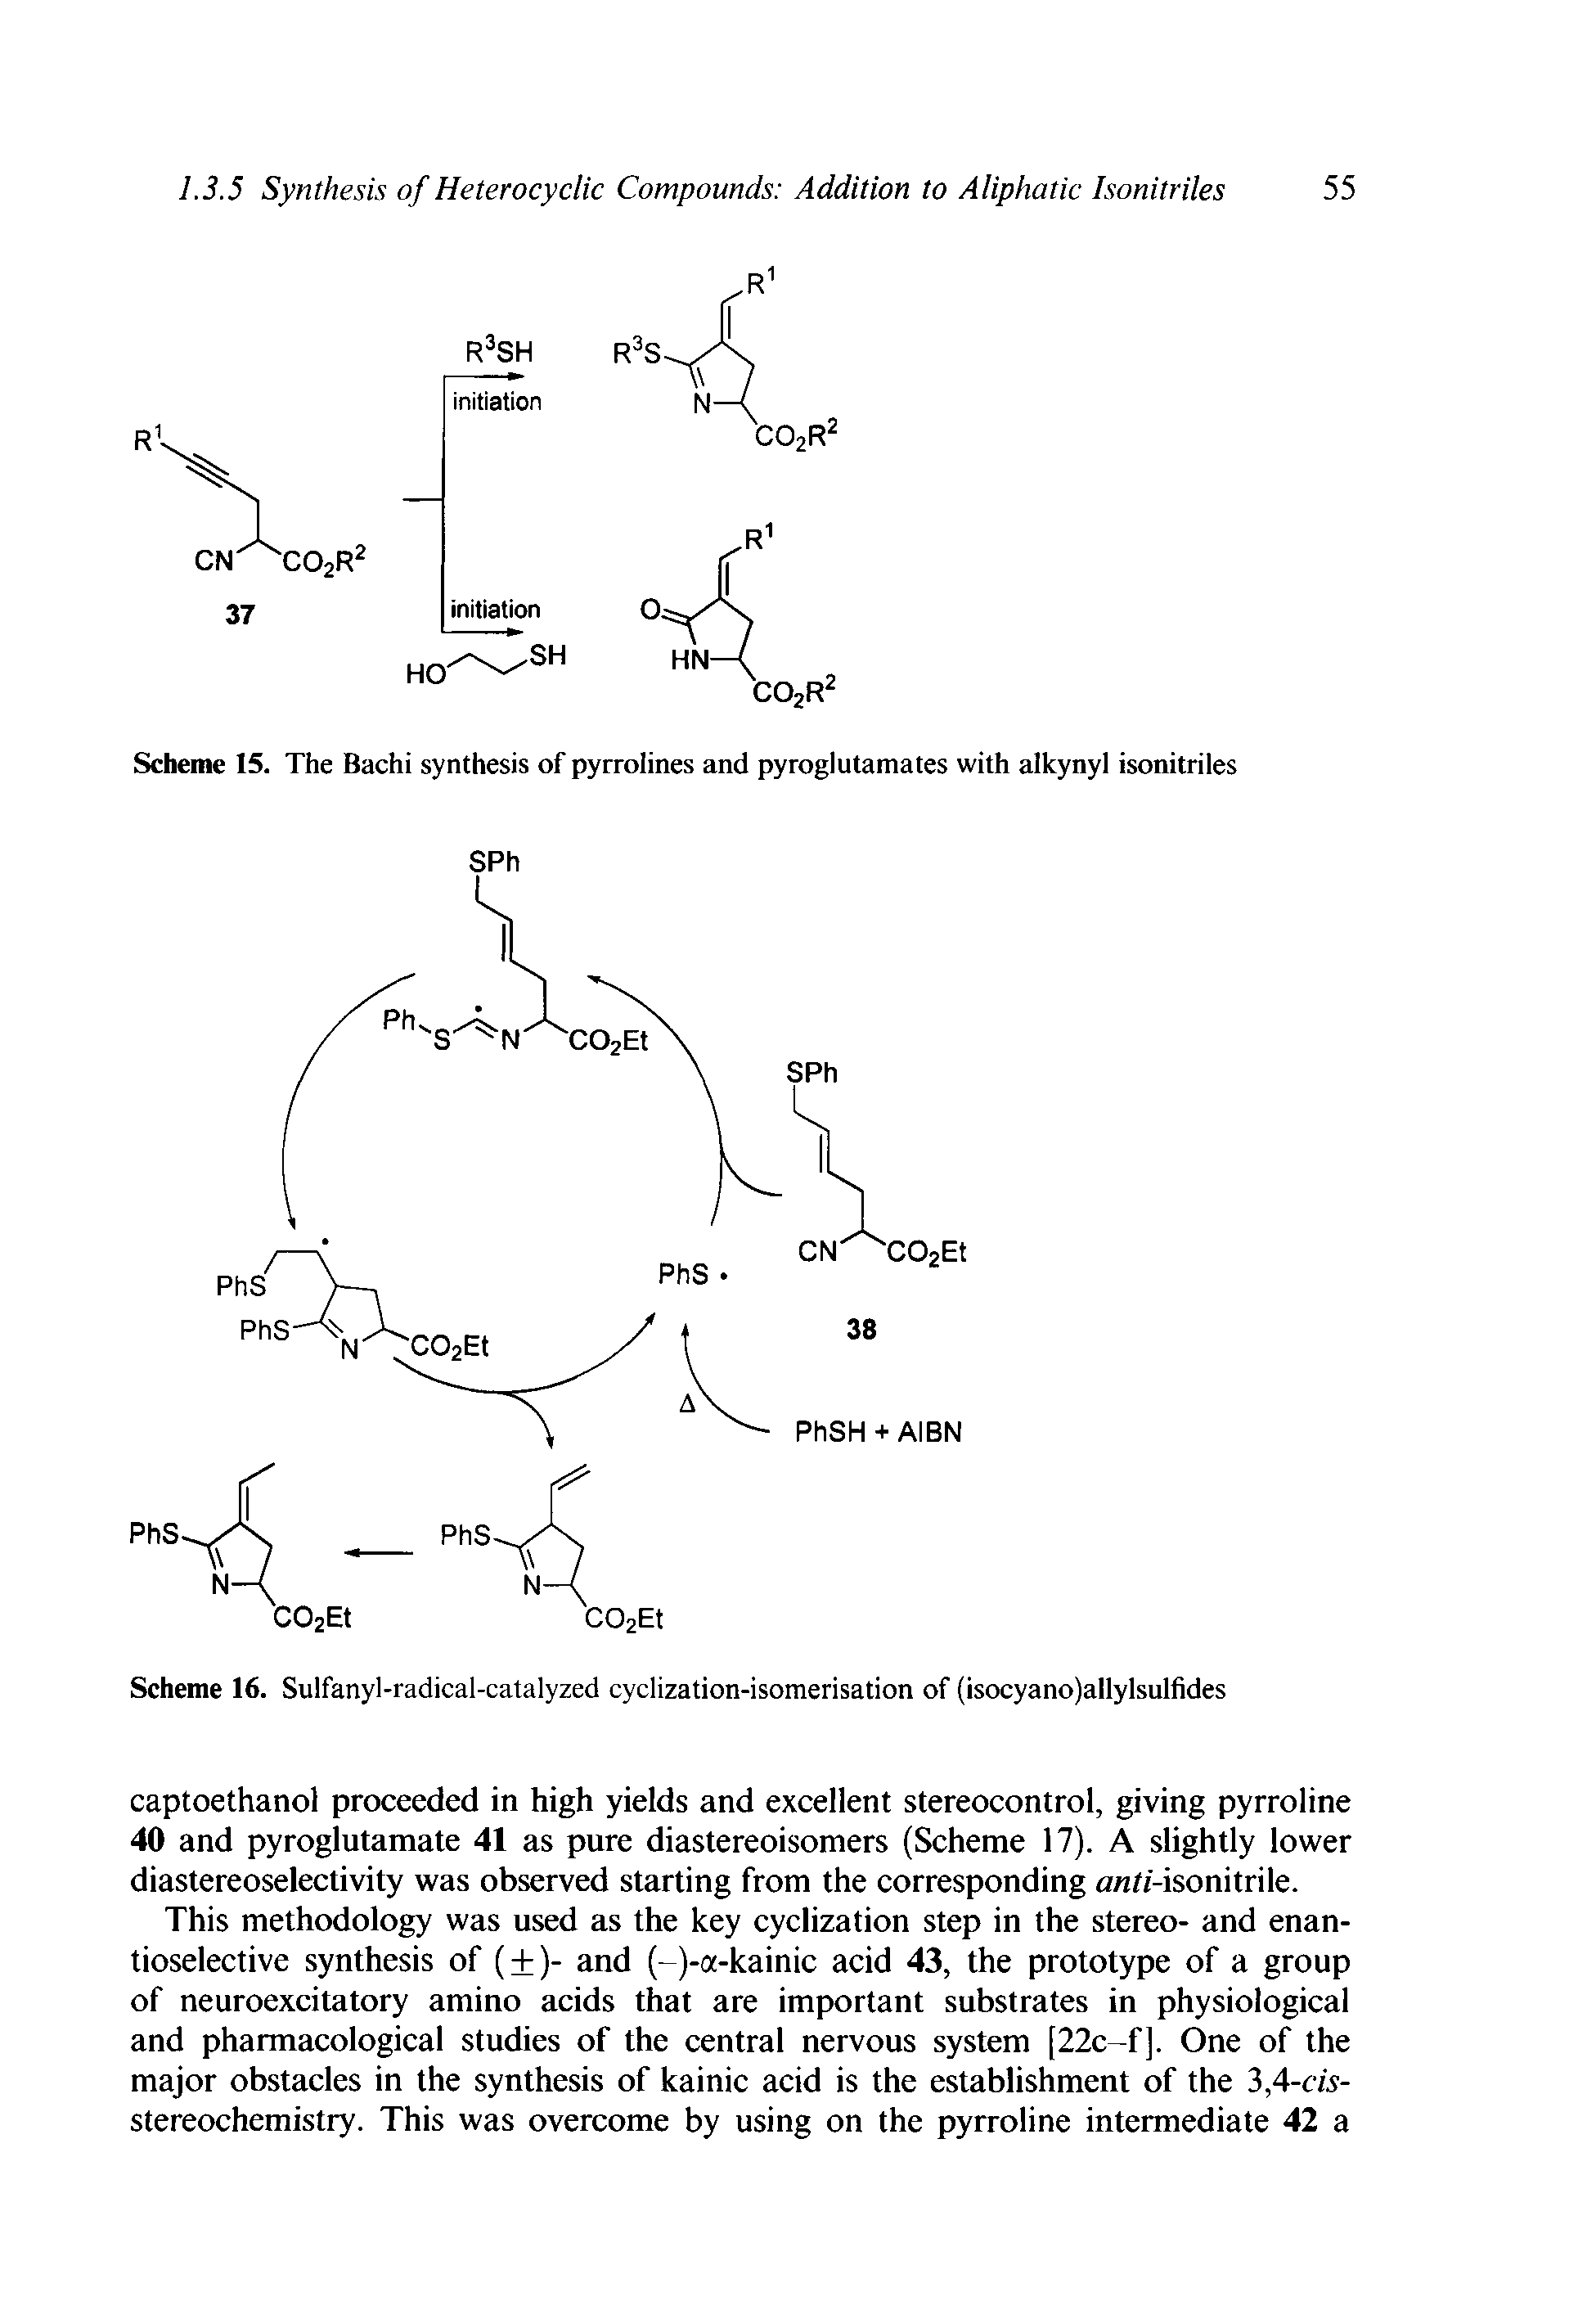 Scheme 16. Sulfanyl-radical-catalyzed cyclization-isomerisation of (isocyano)allylsulfides...